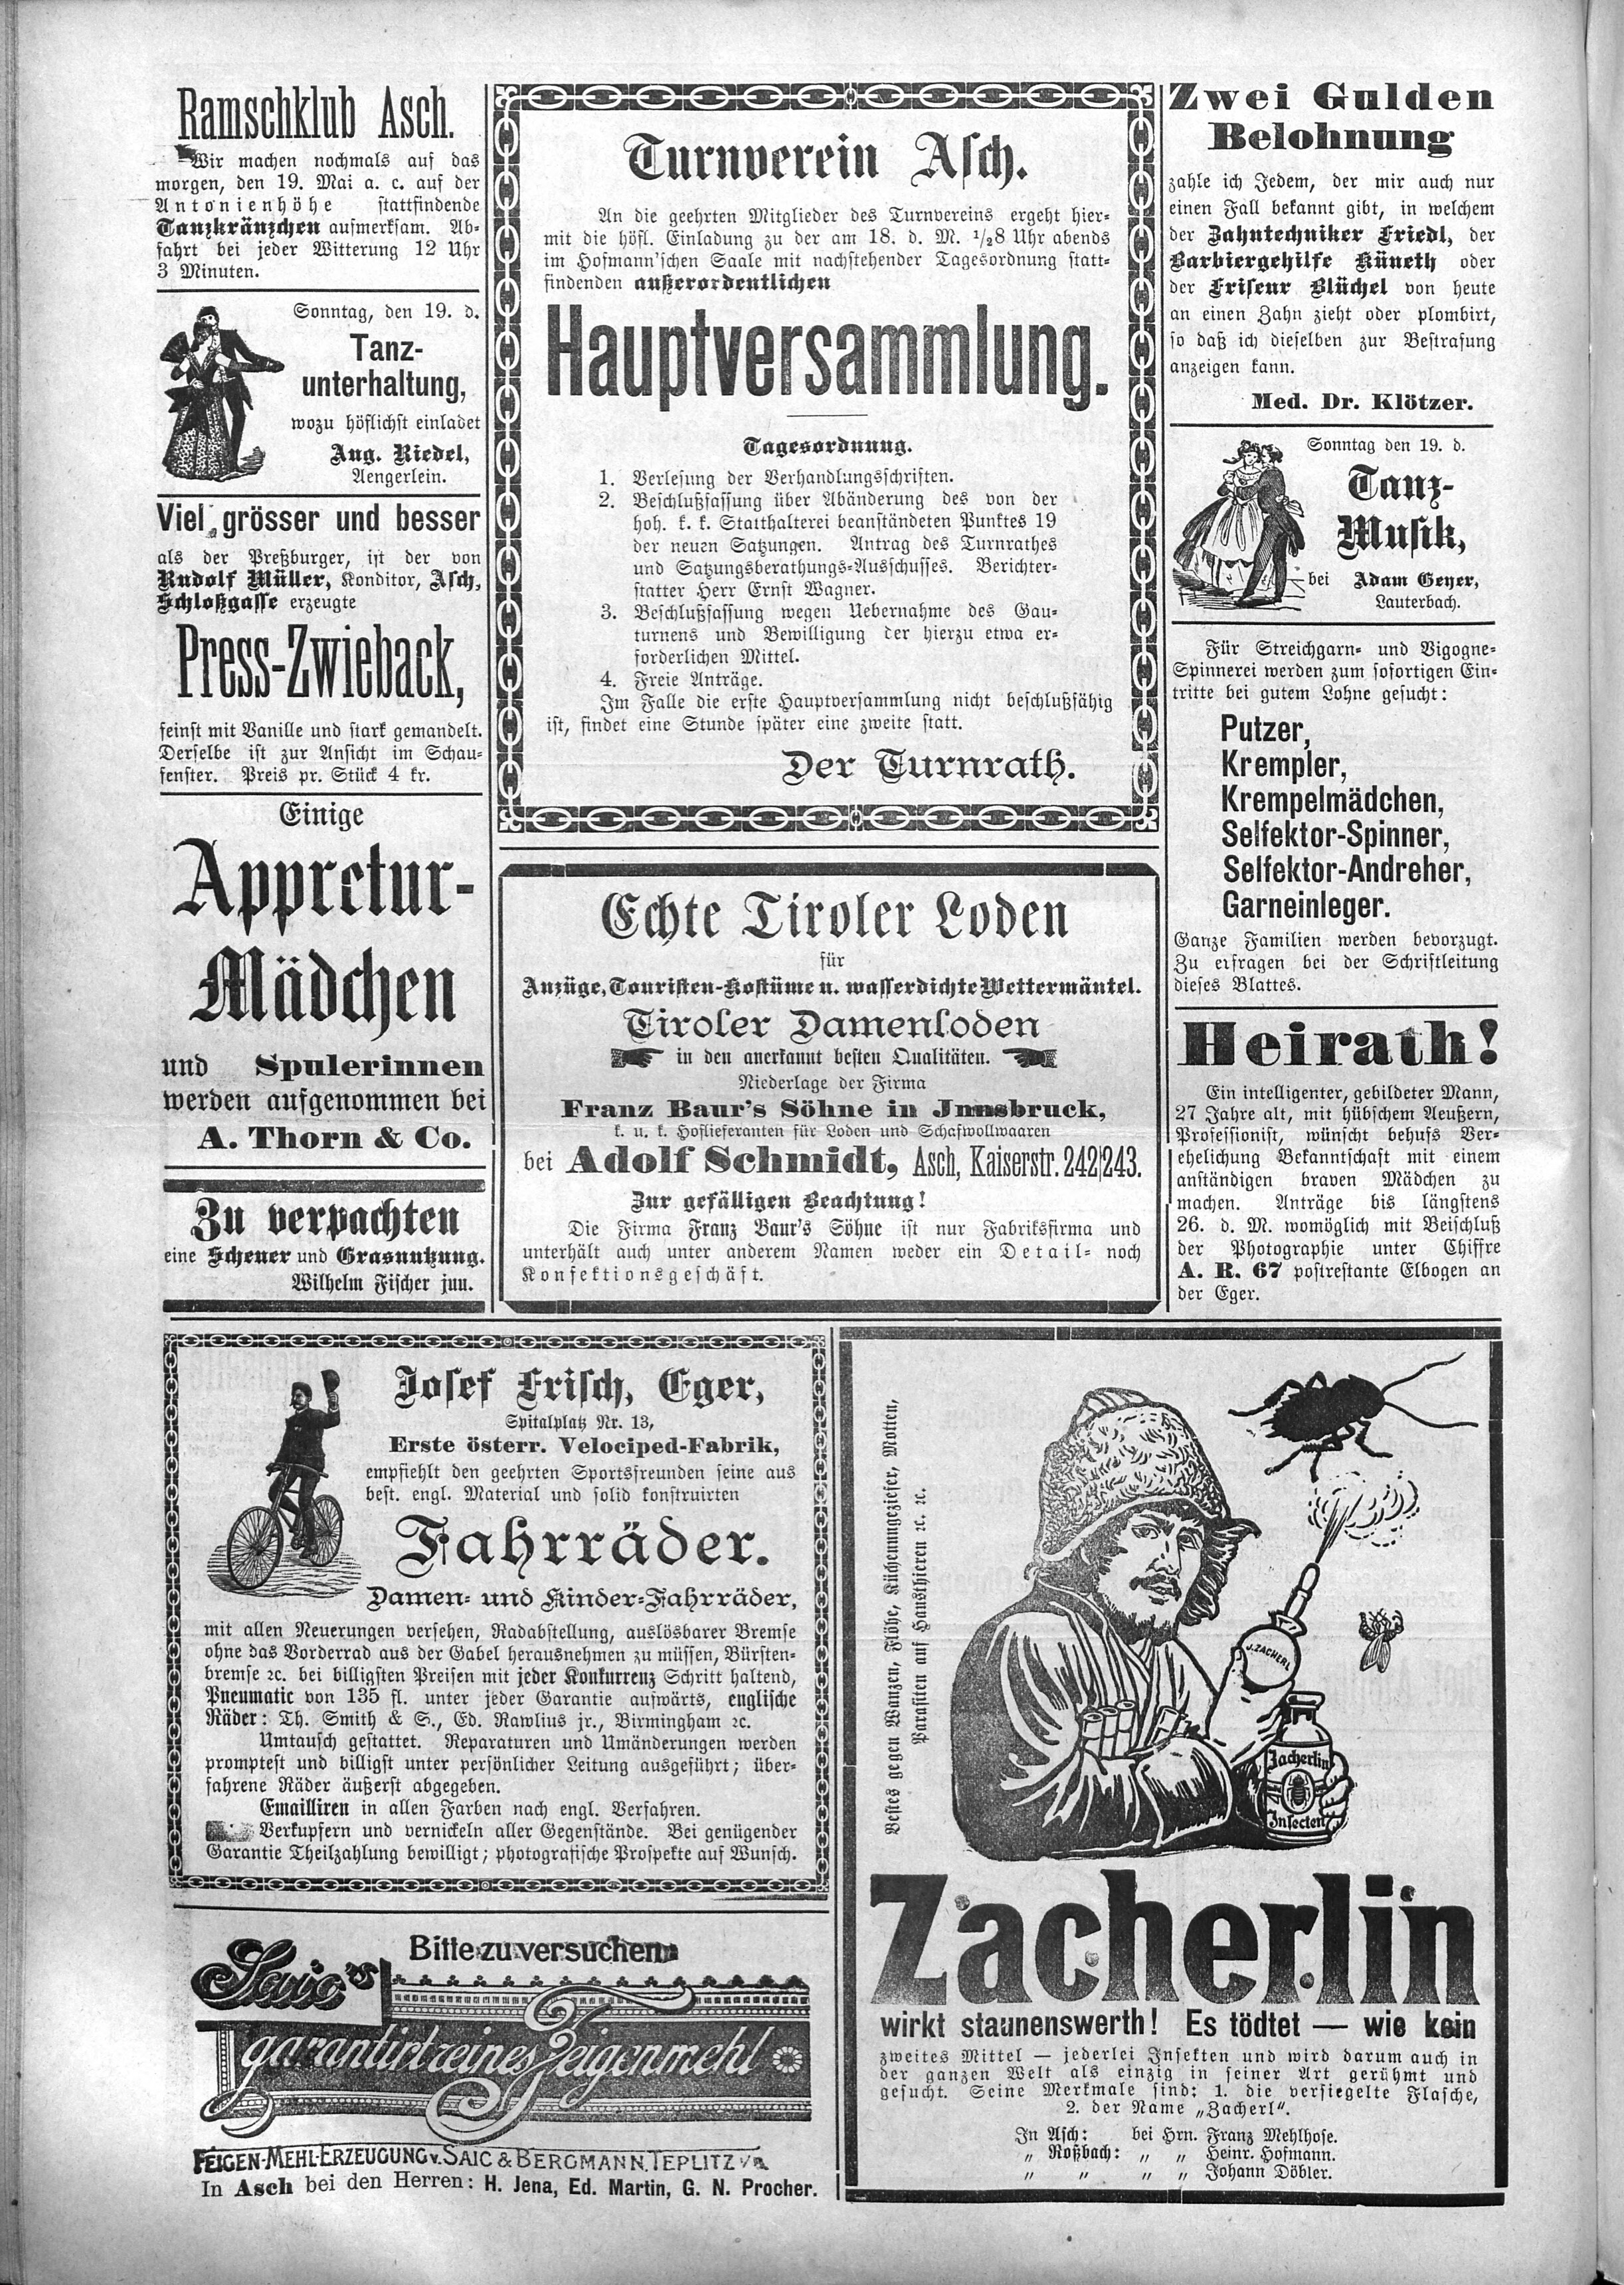 8. soap-ch_knihovna_ascher-zeitung-1895-05-18-n40_1870